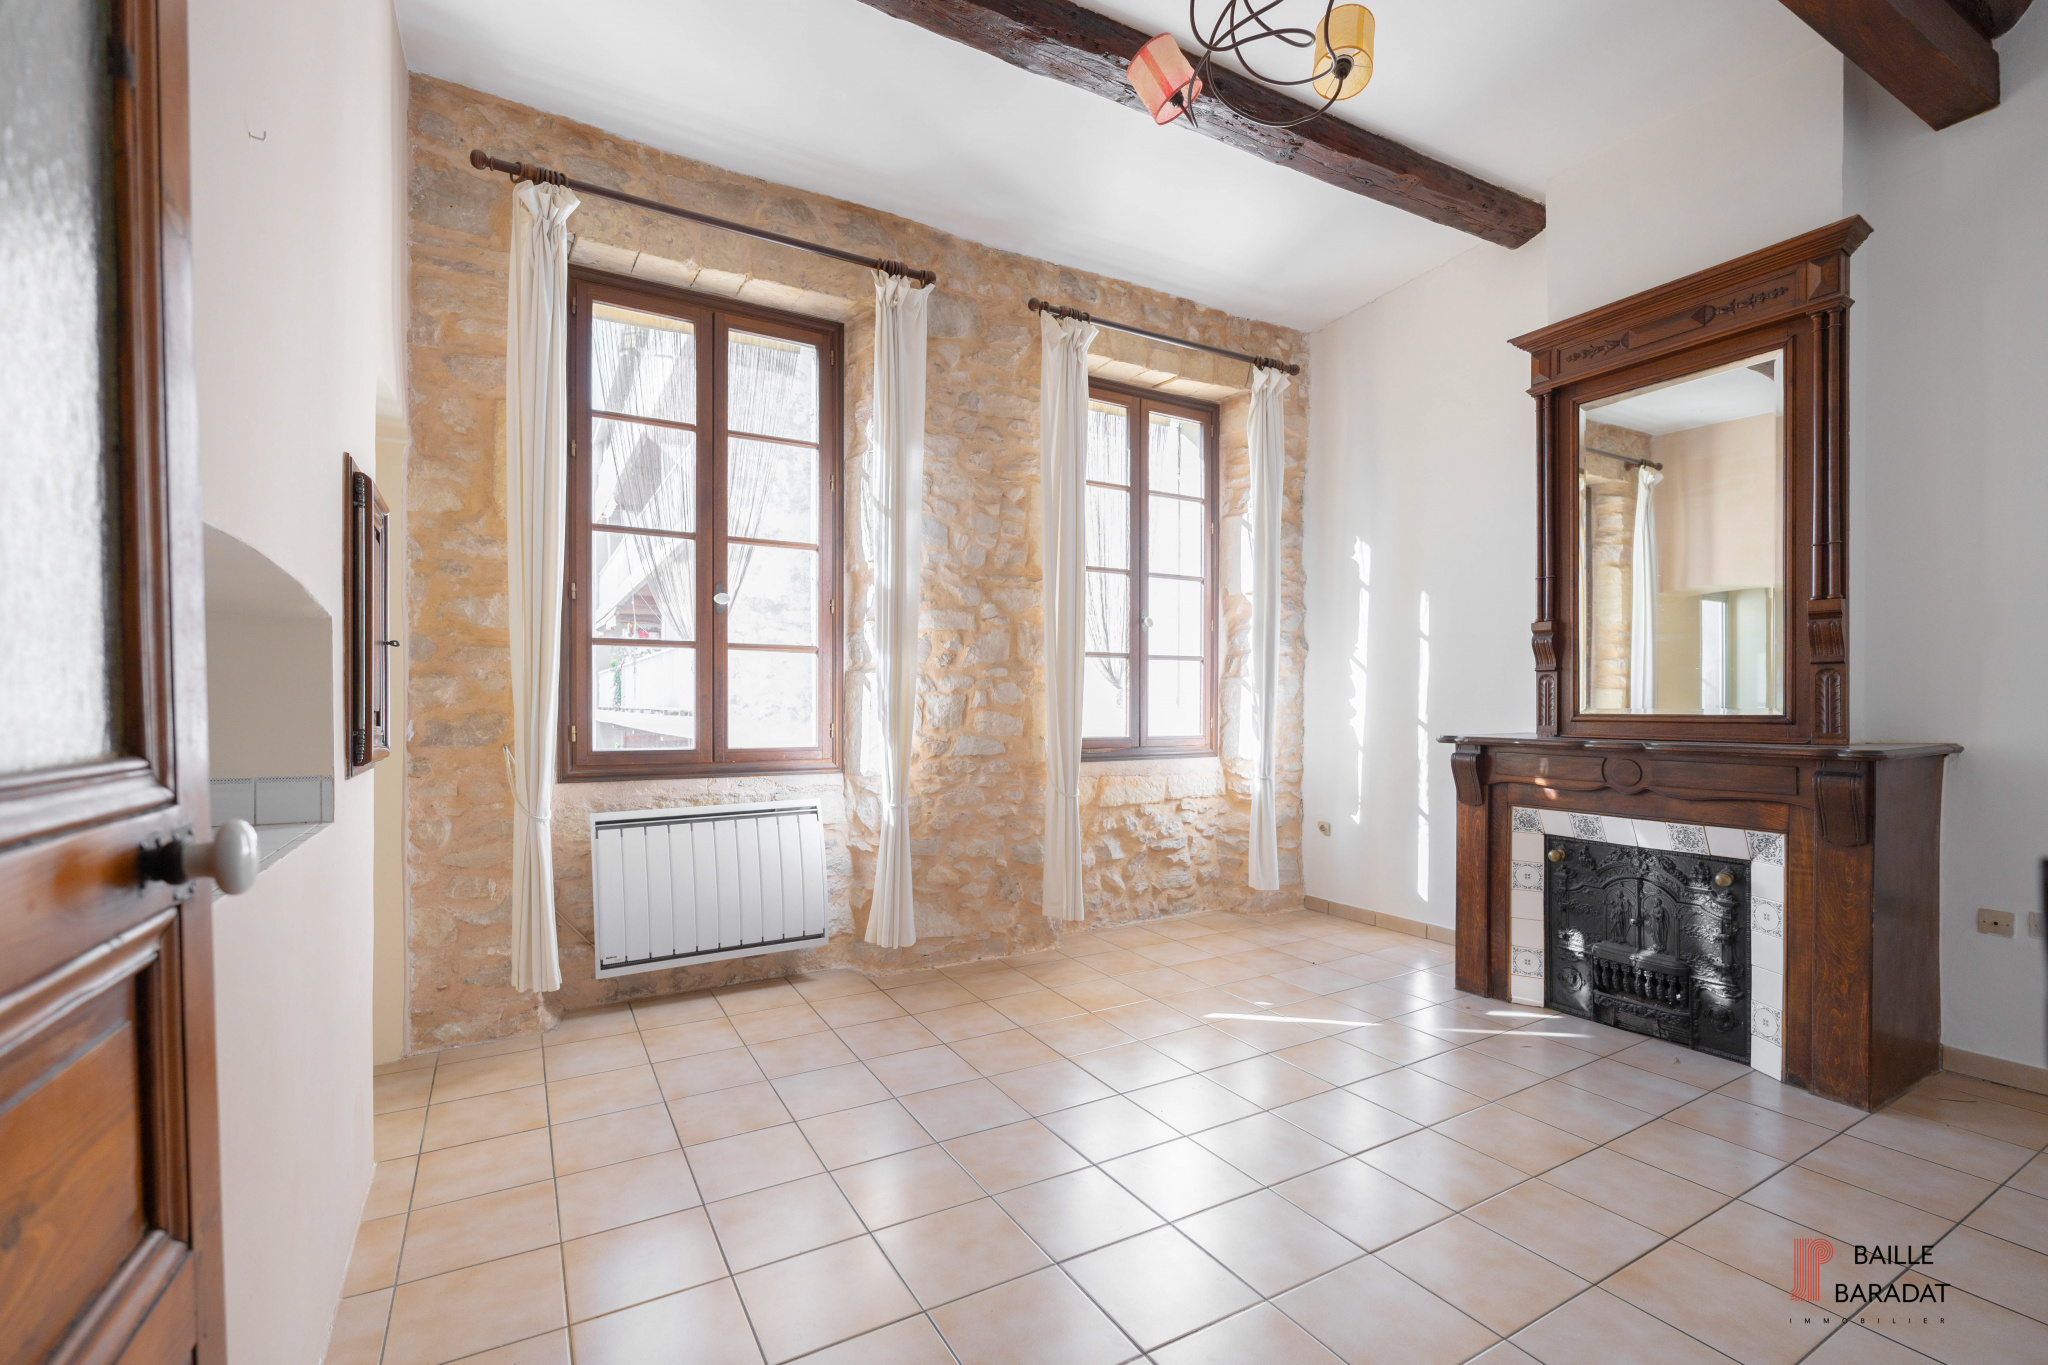 Appartement LODI - BAILLE à vendre à Marseille 13006 par l'agence Baille-Baradat